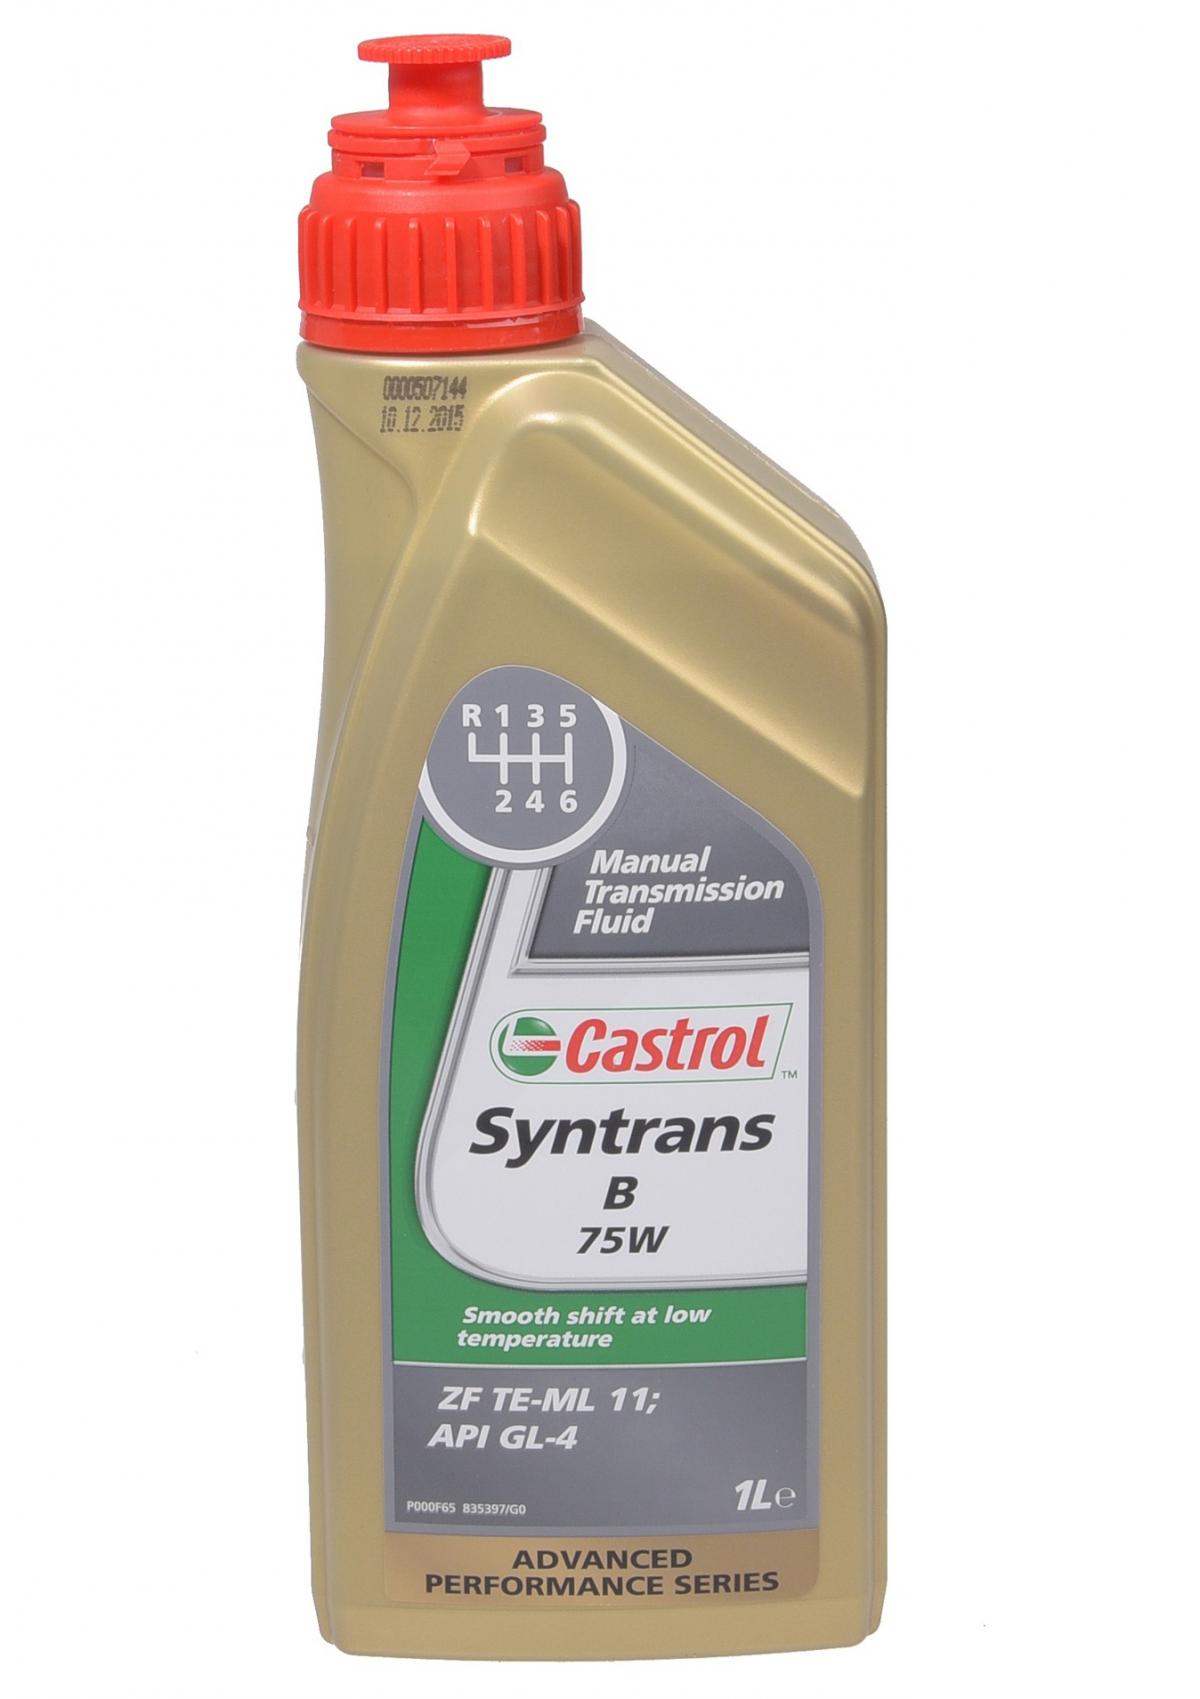 Ман масло в коробку. Трансмиссионное масло Castrol Syntrans b 75w 1 л. Кастрол 75w90 трансмиссионное масло. Castrol Syntrans b 75w артикул. Castrol Syntrans Transaxle 75w-90 артикул.